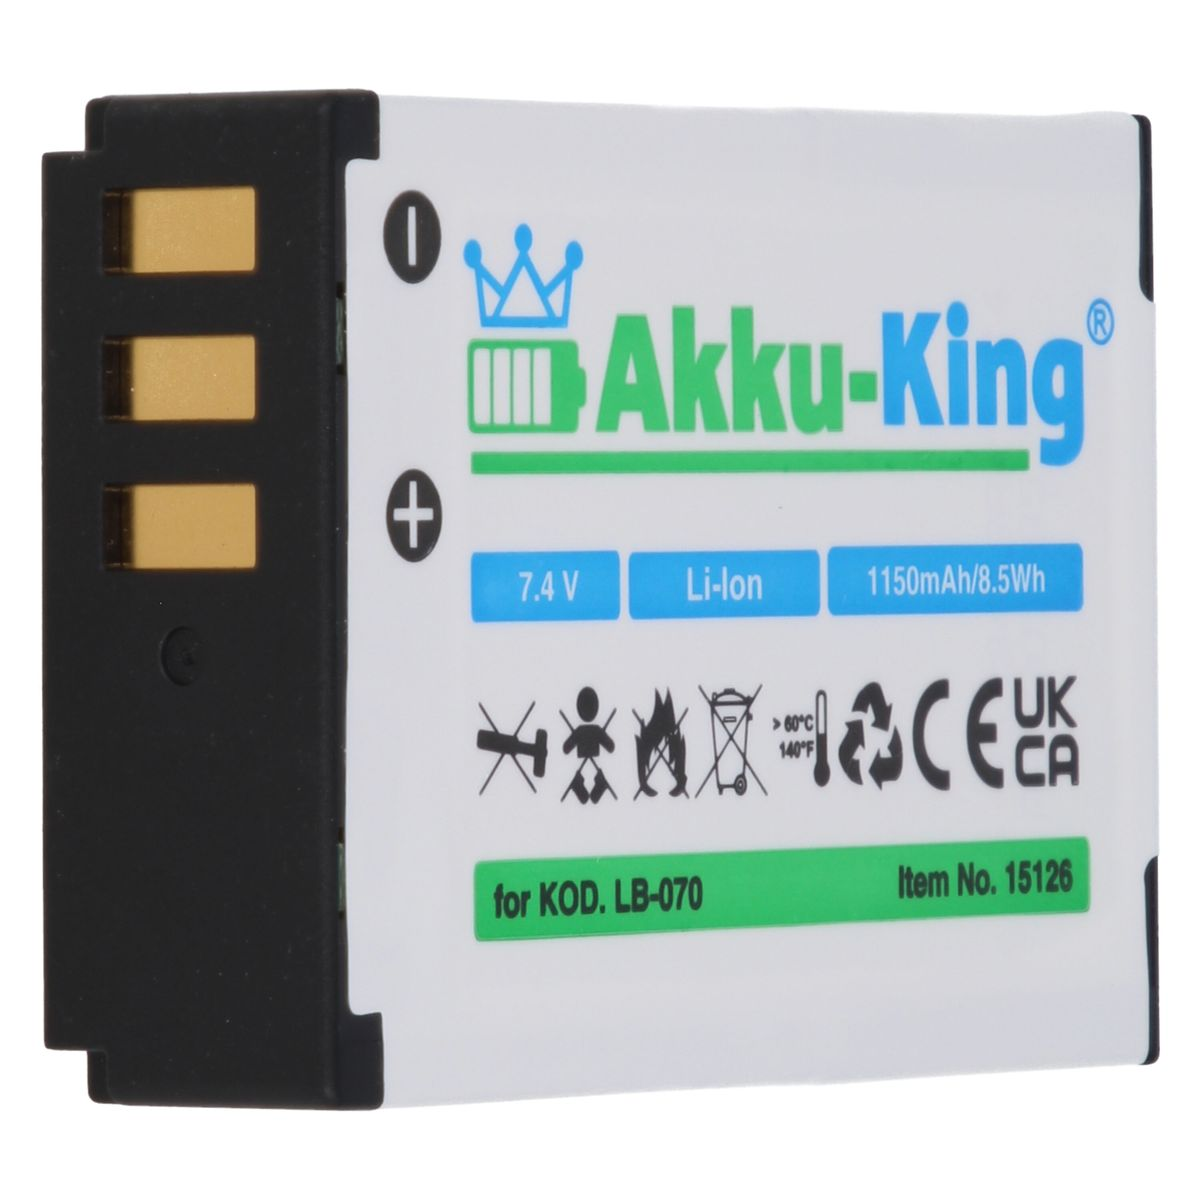 AKKU-KING Akku mit Volt, 1150mAh LB-070 Kodak Li-Ion 7.4 Kamera-Akku, kompatibel